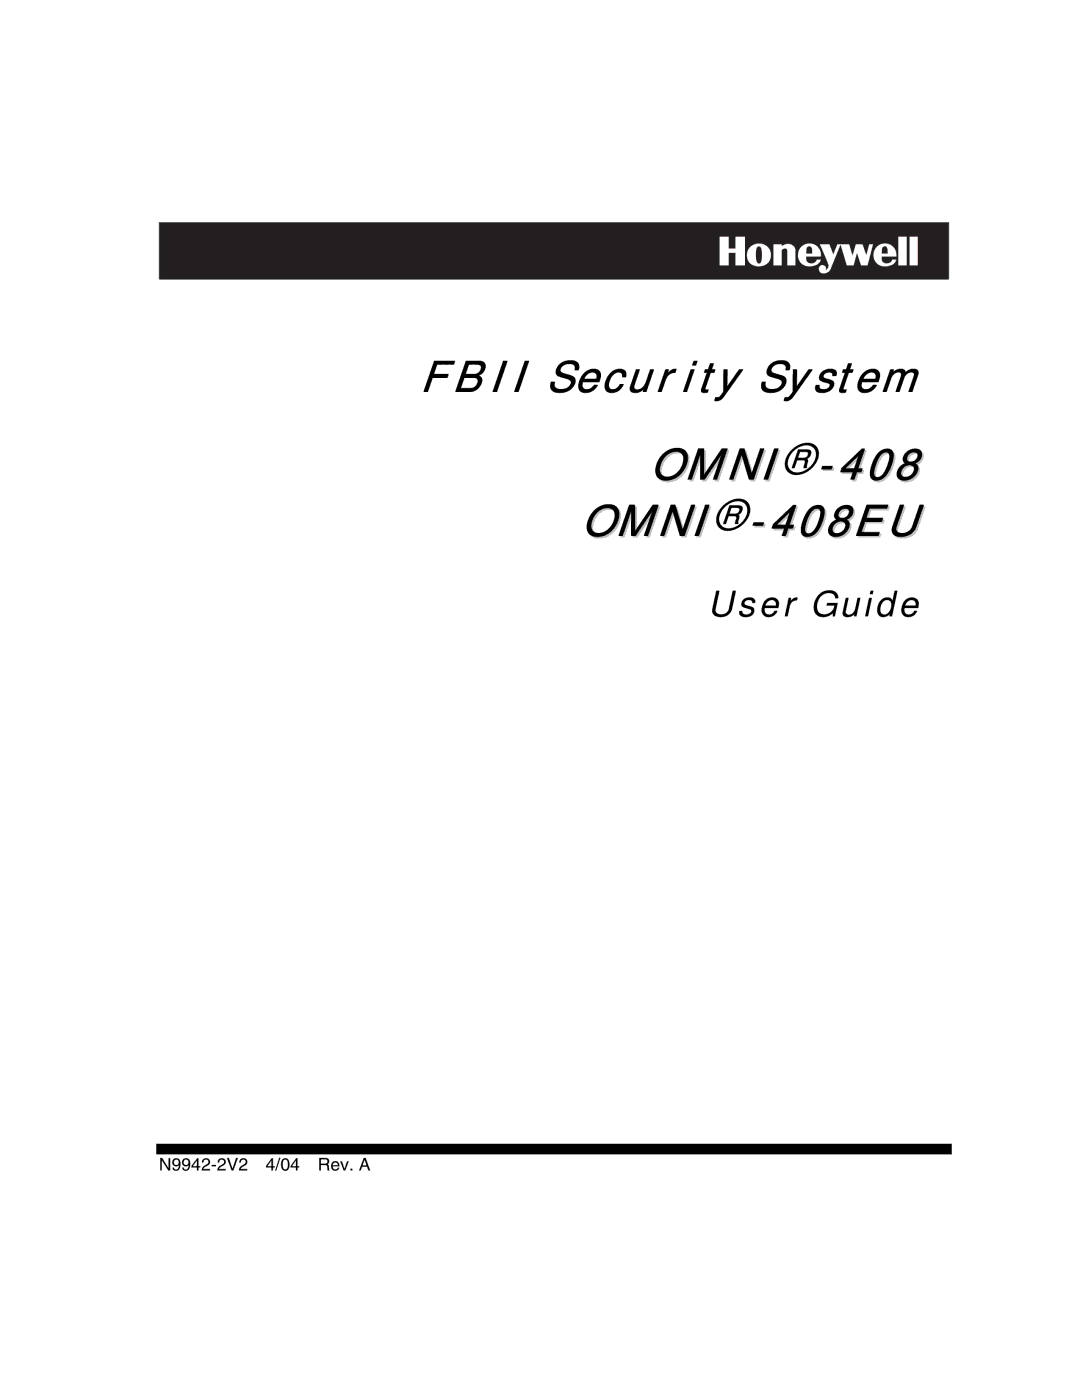 Honeywell manual OMNI-408EU 